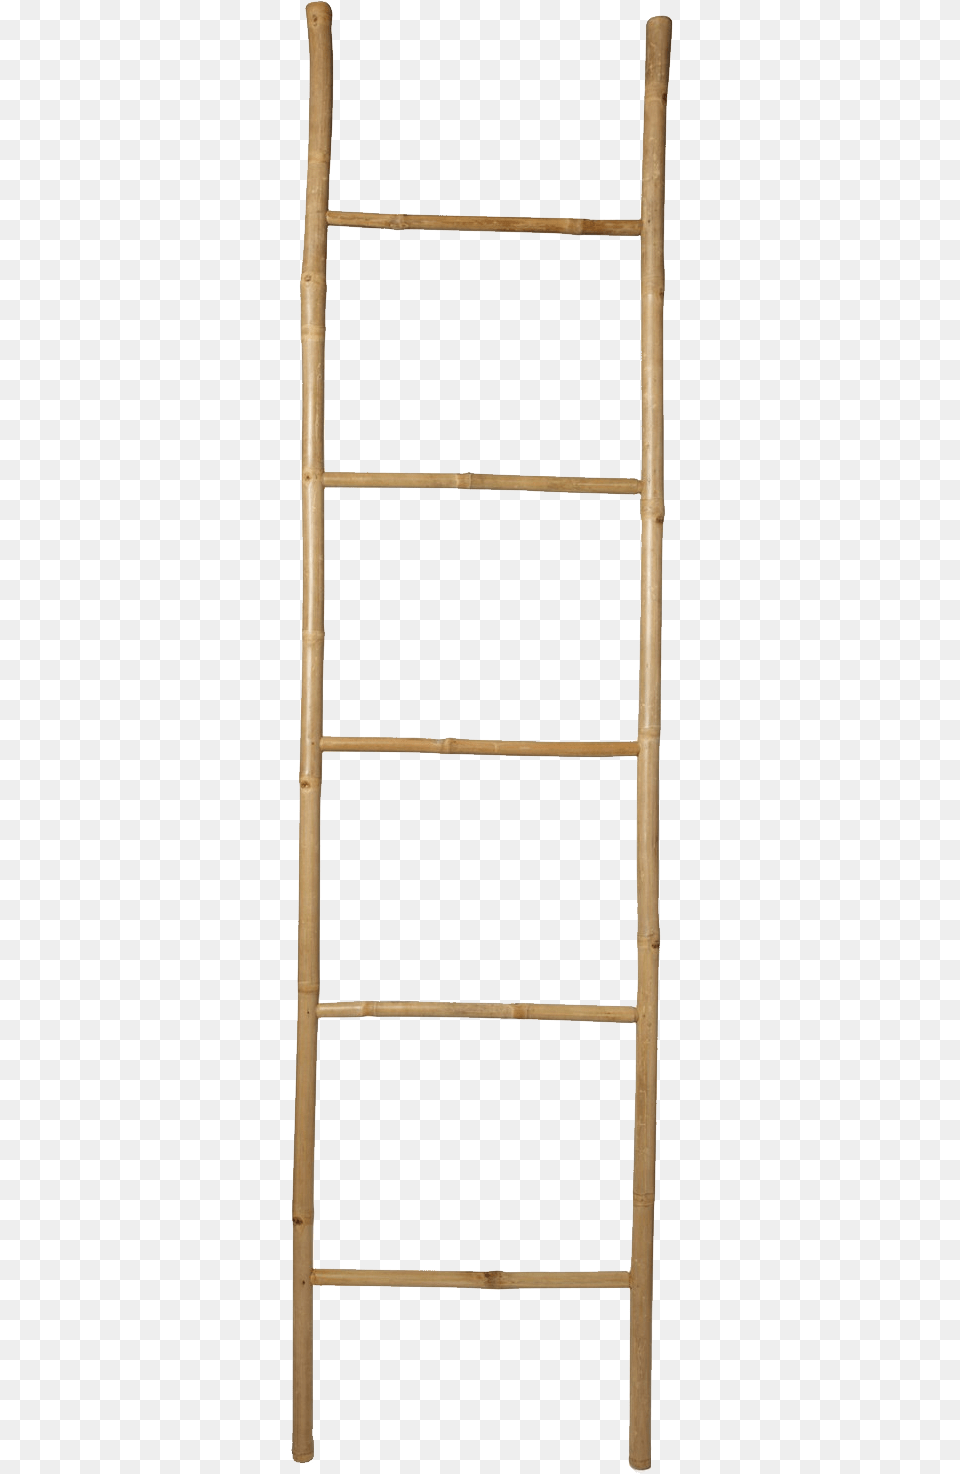 Wood Ladder Transparent Background Ladder Png